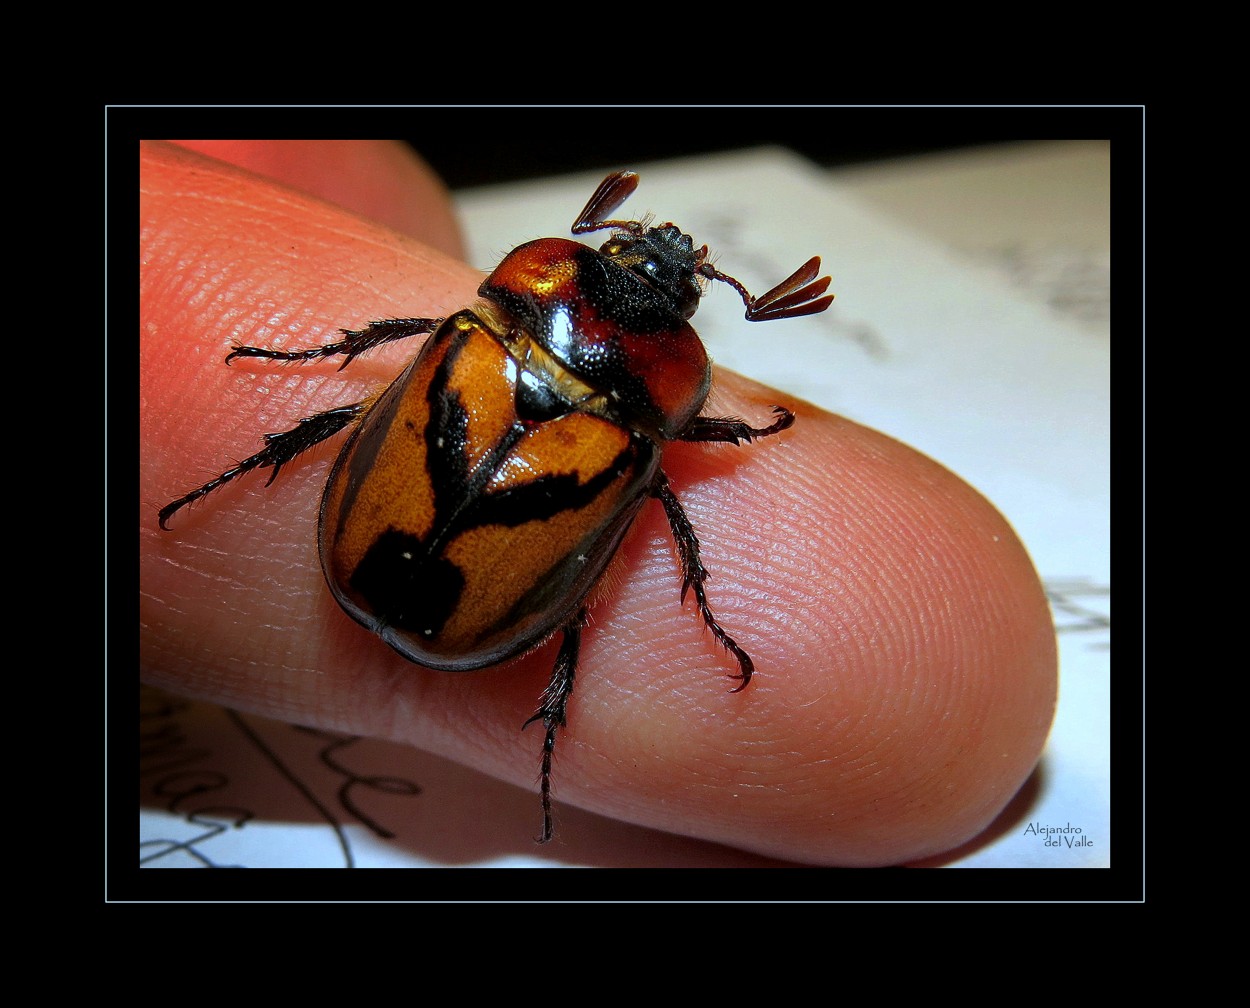 "Escarabajo y huella digital" de Alejandro del Valle